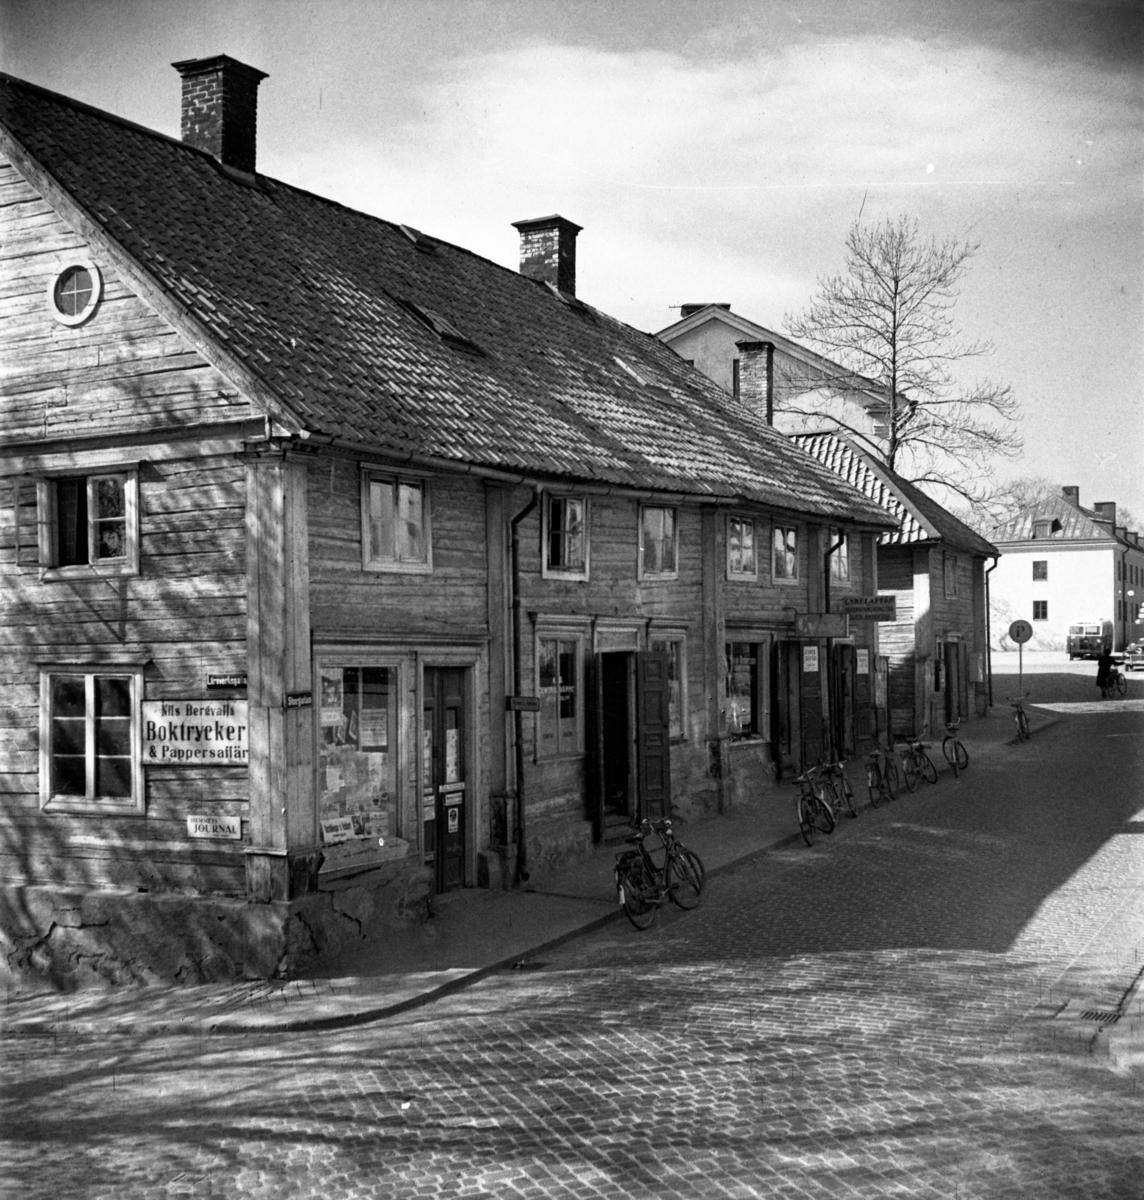 von Lingens gård: Huset flyttades till Gamla Linköping från Storgatan 58. Byggnaden uppfördes av biskop Andreas Rhyzelius på 1720-talet. Den återspeglar den karolinska strävheten - det nakna rödtjärade timret, de smårutiga fönstren med grågröna foder och det valmade spåntaket. Gårdsidan har en liten annan karaktär, den dubbla fritrappan ger den en öppenhet som gatufasaden saknar. Till gården hör en fristående köksflygel. År 1784 köpte friherre Herman von Lingen gården. År 1958 skänkte Östgöta Stadshypoteksförening gården till Gamla Linköping.
När bilden togs drev kompanjonerna Ohlsson och Justin Antikboden i gårdens gamla köksflygel.